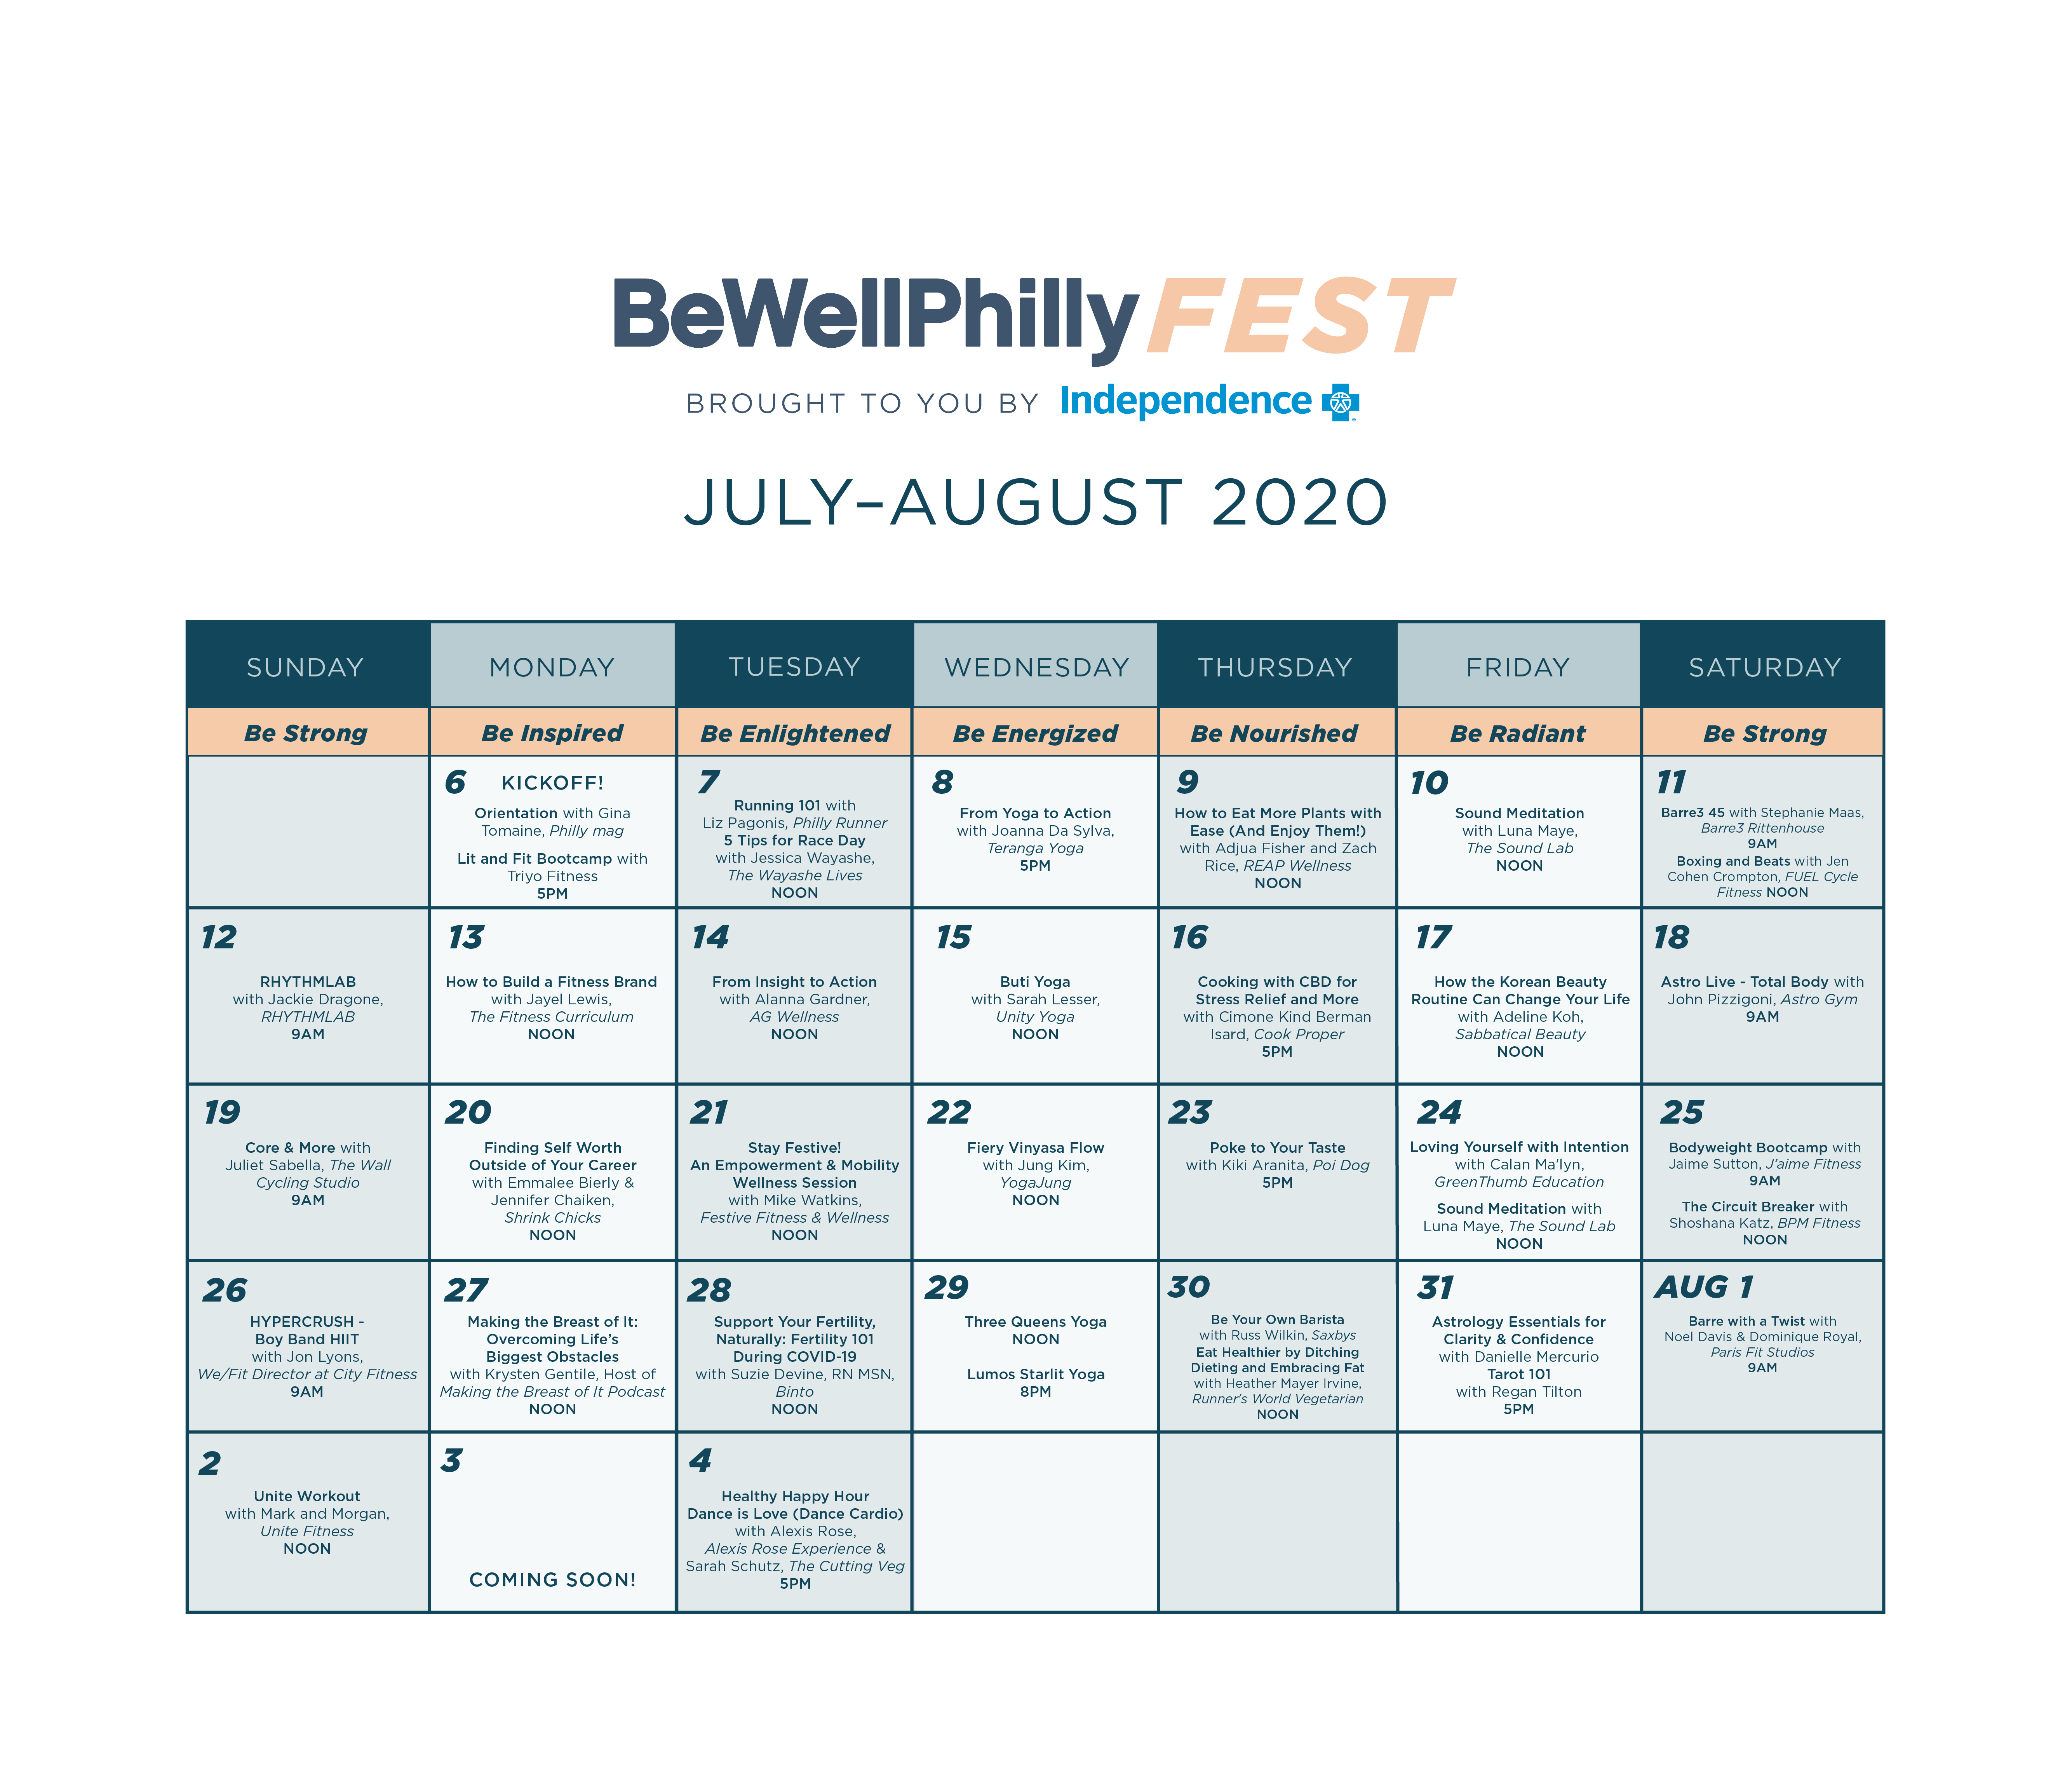 Be Well Philly Fest Philadelphia Magazine